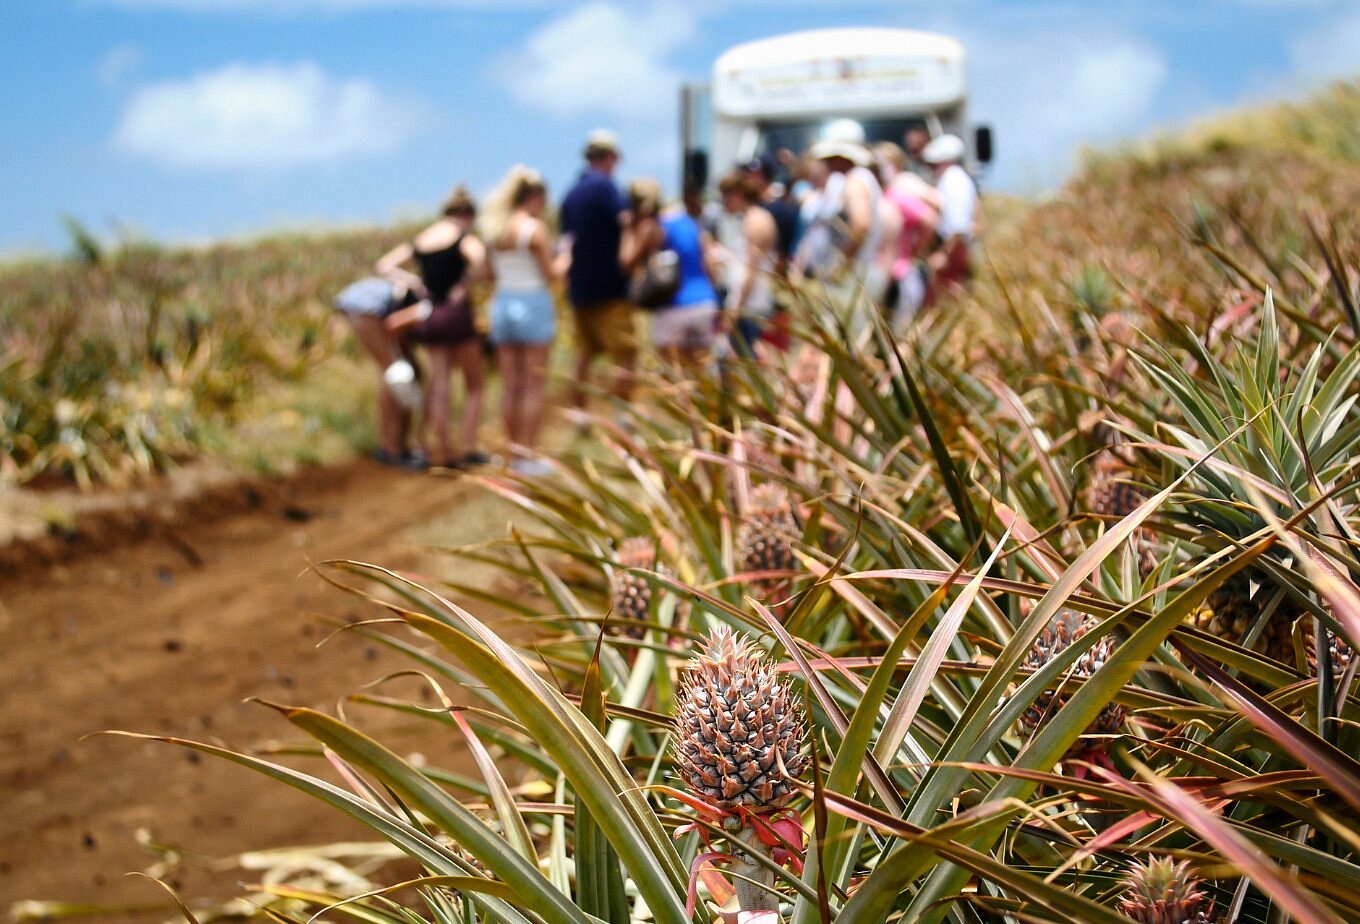 pineapple express tour hawaii